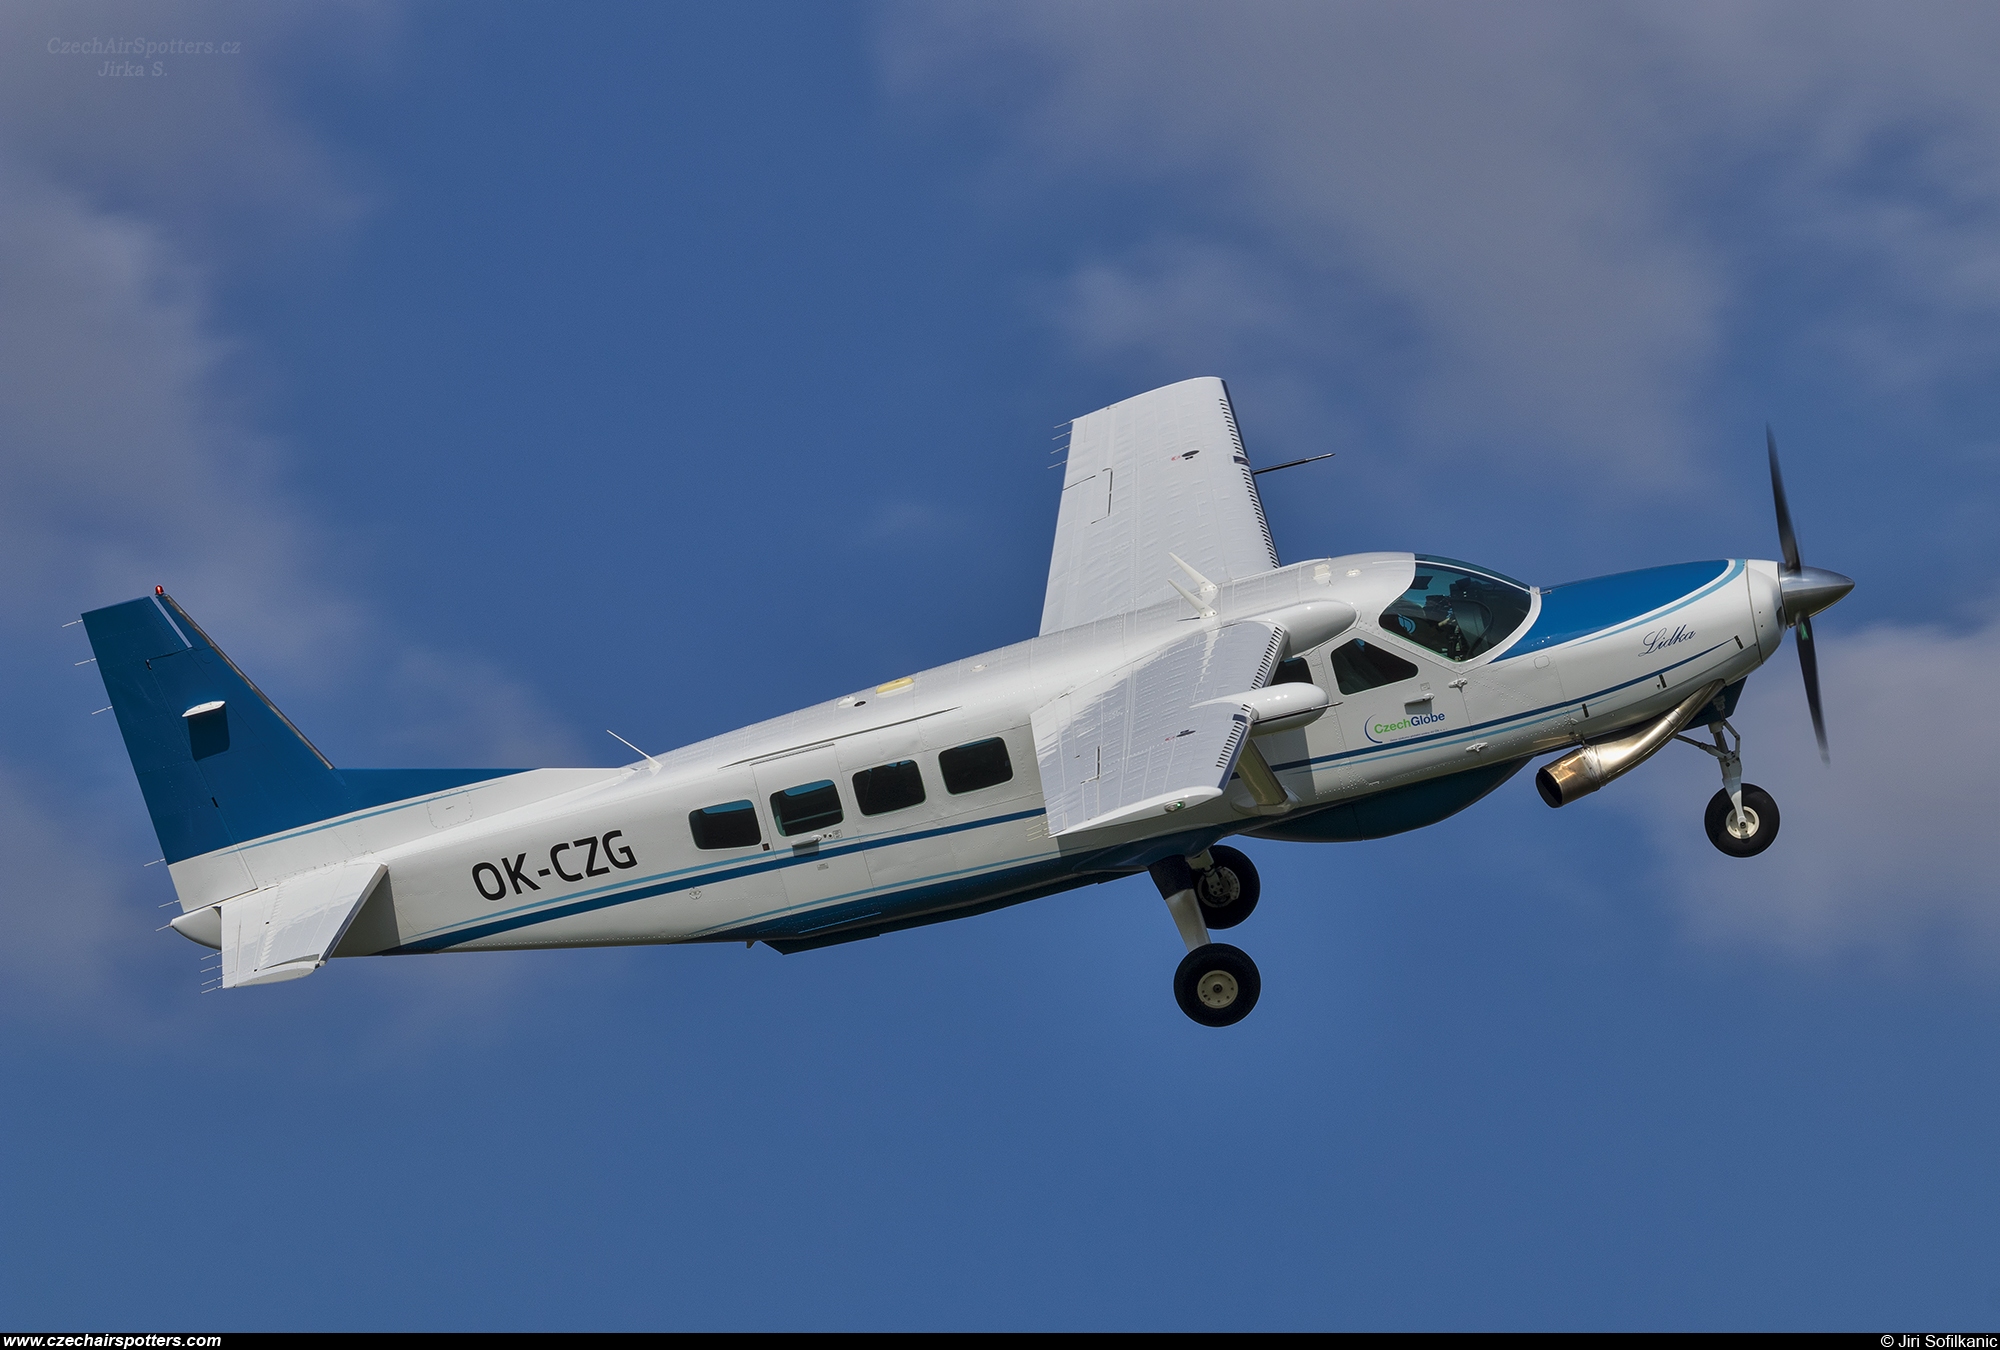 CzechGlobe – Cessna 208B Grand Caravan OK-CZG